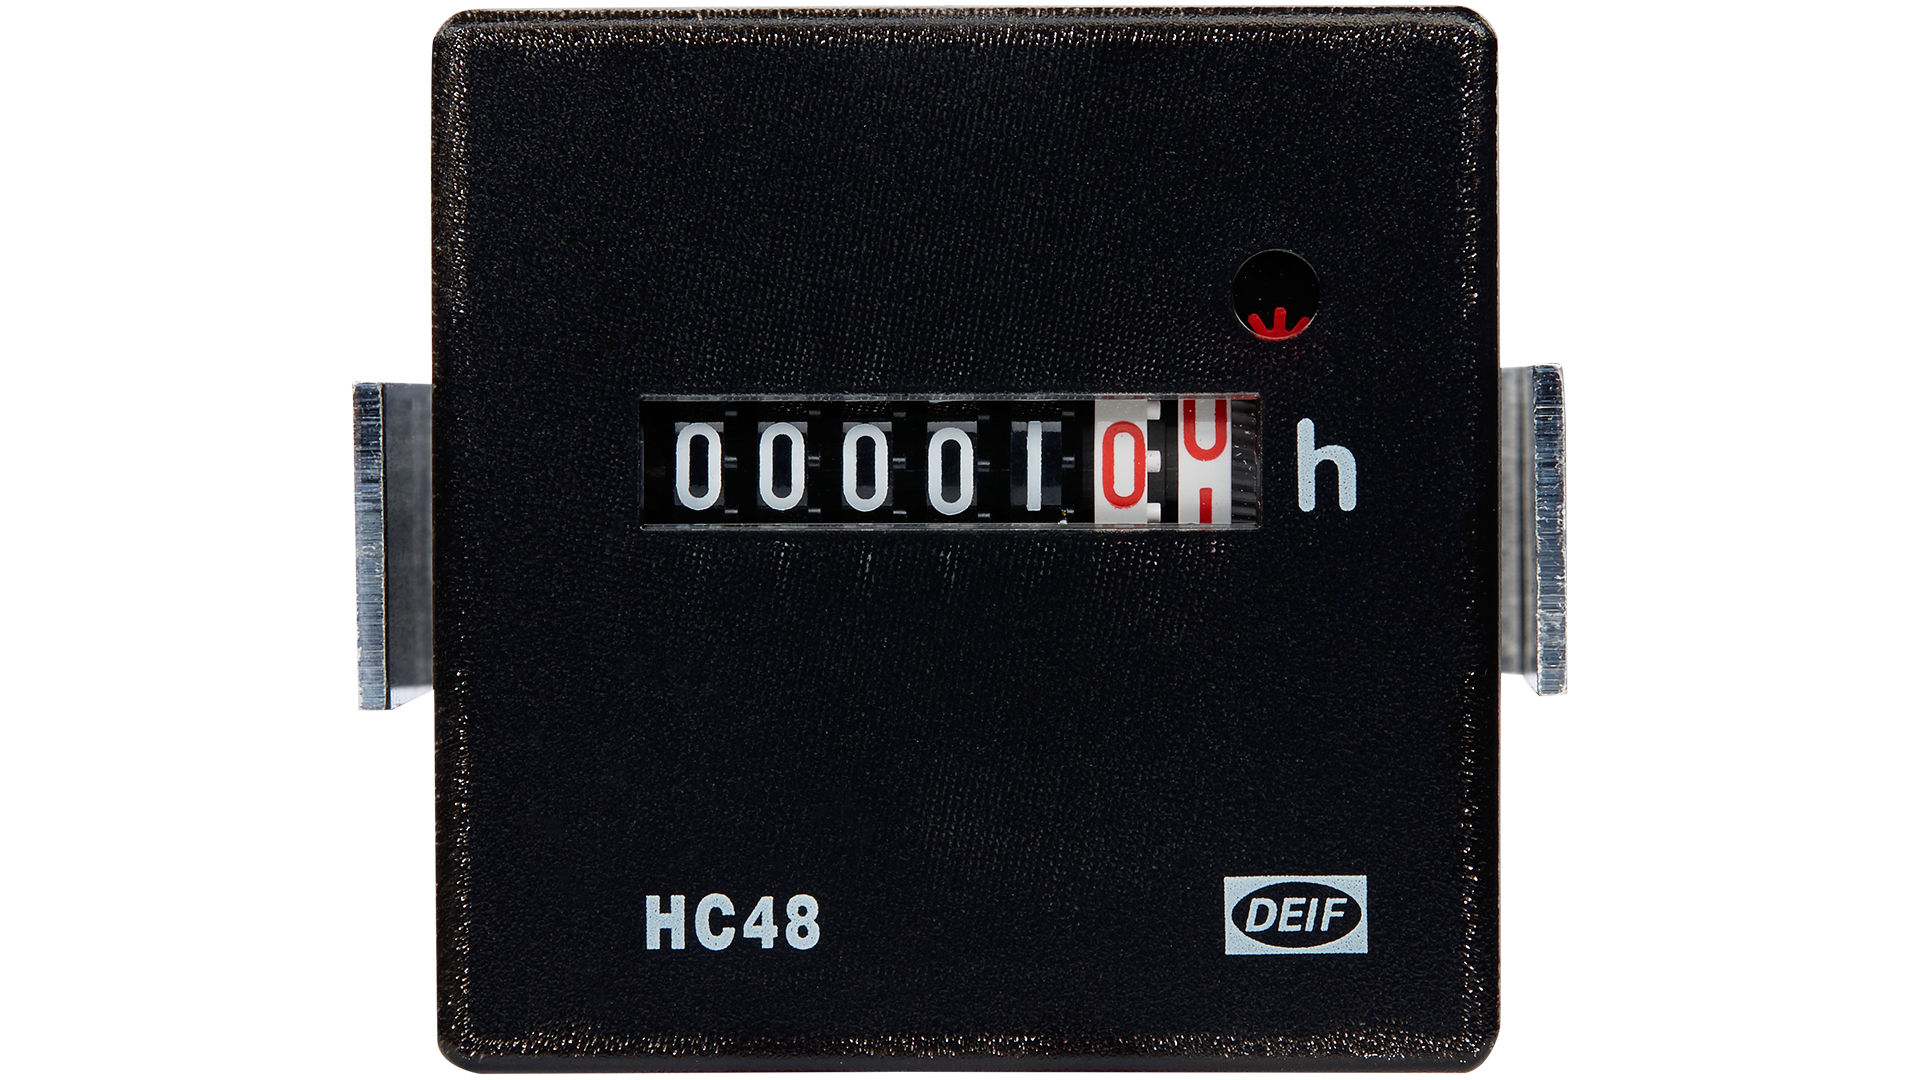 Stundenzähler - HC 48 - DEIF - analog / elektromechanisch / mechanisch